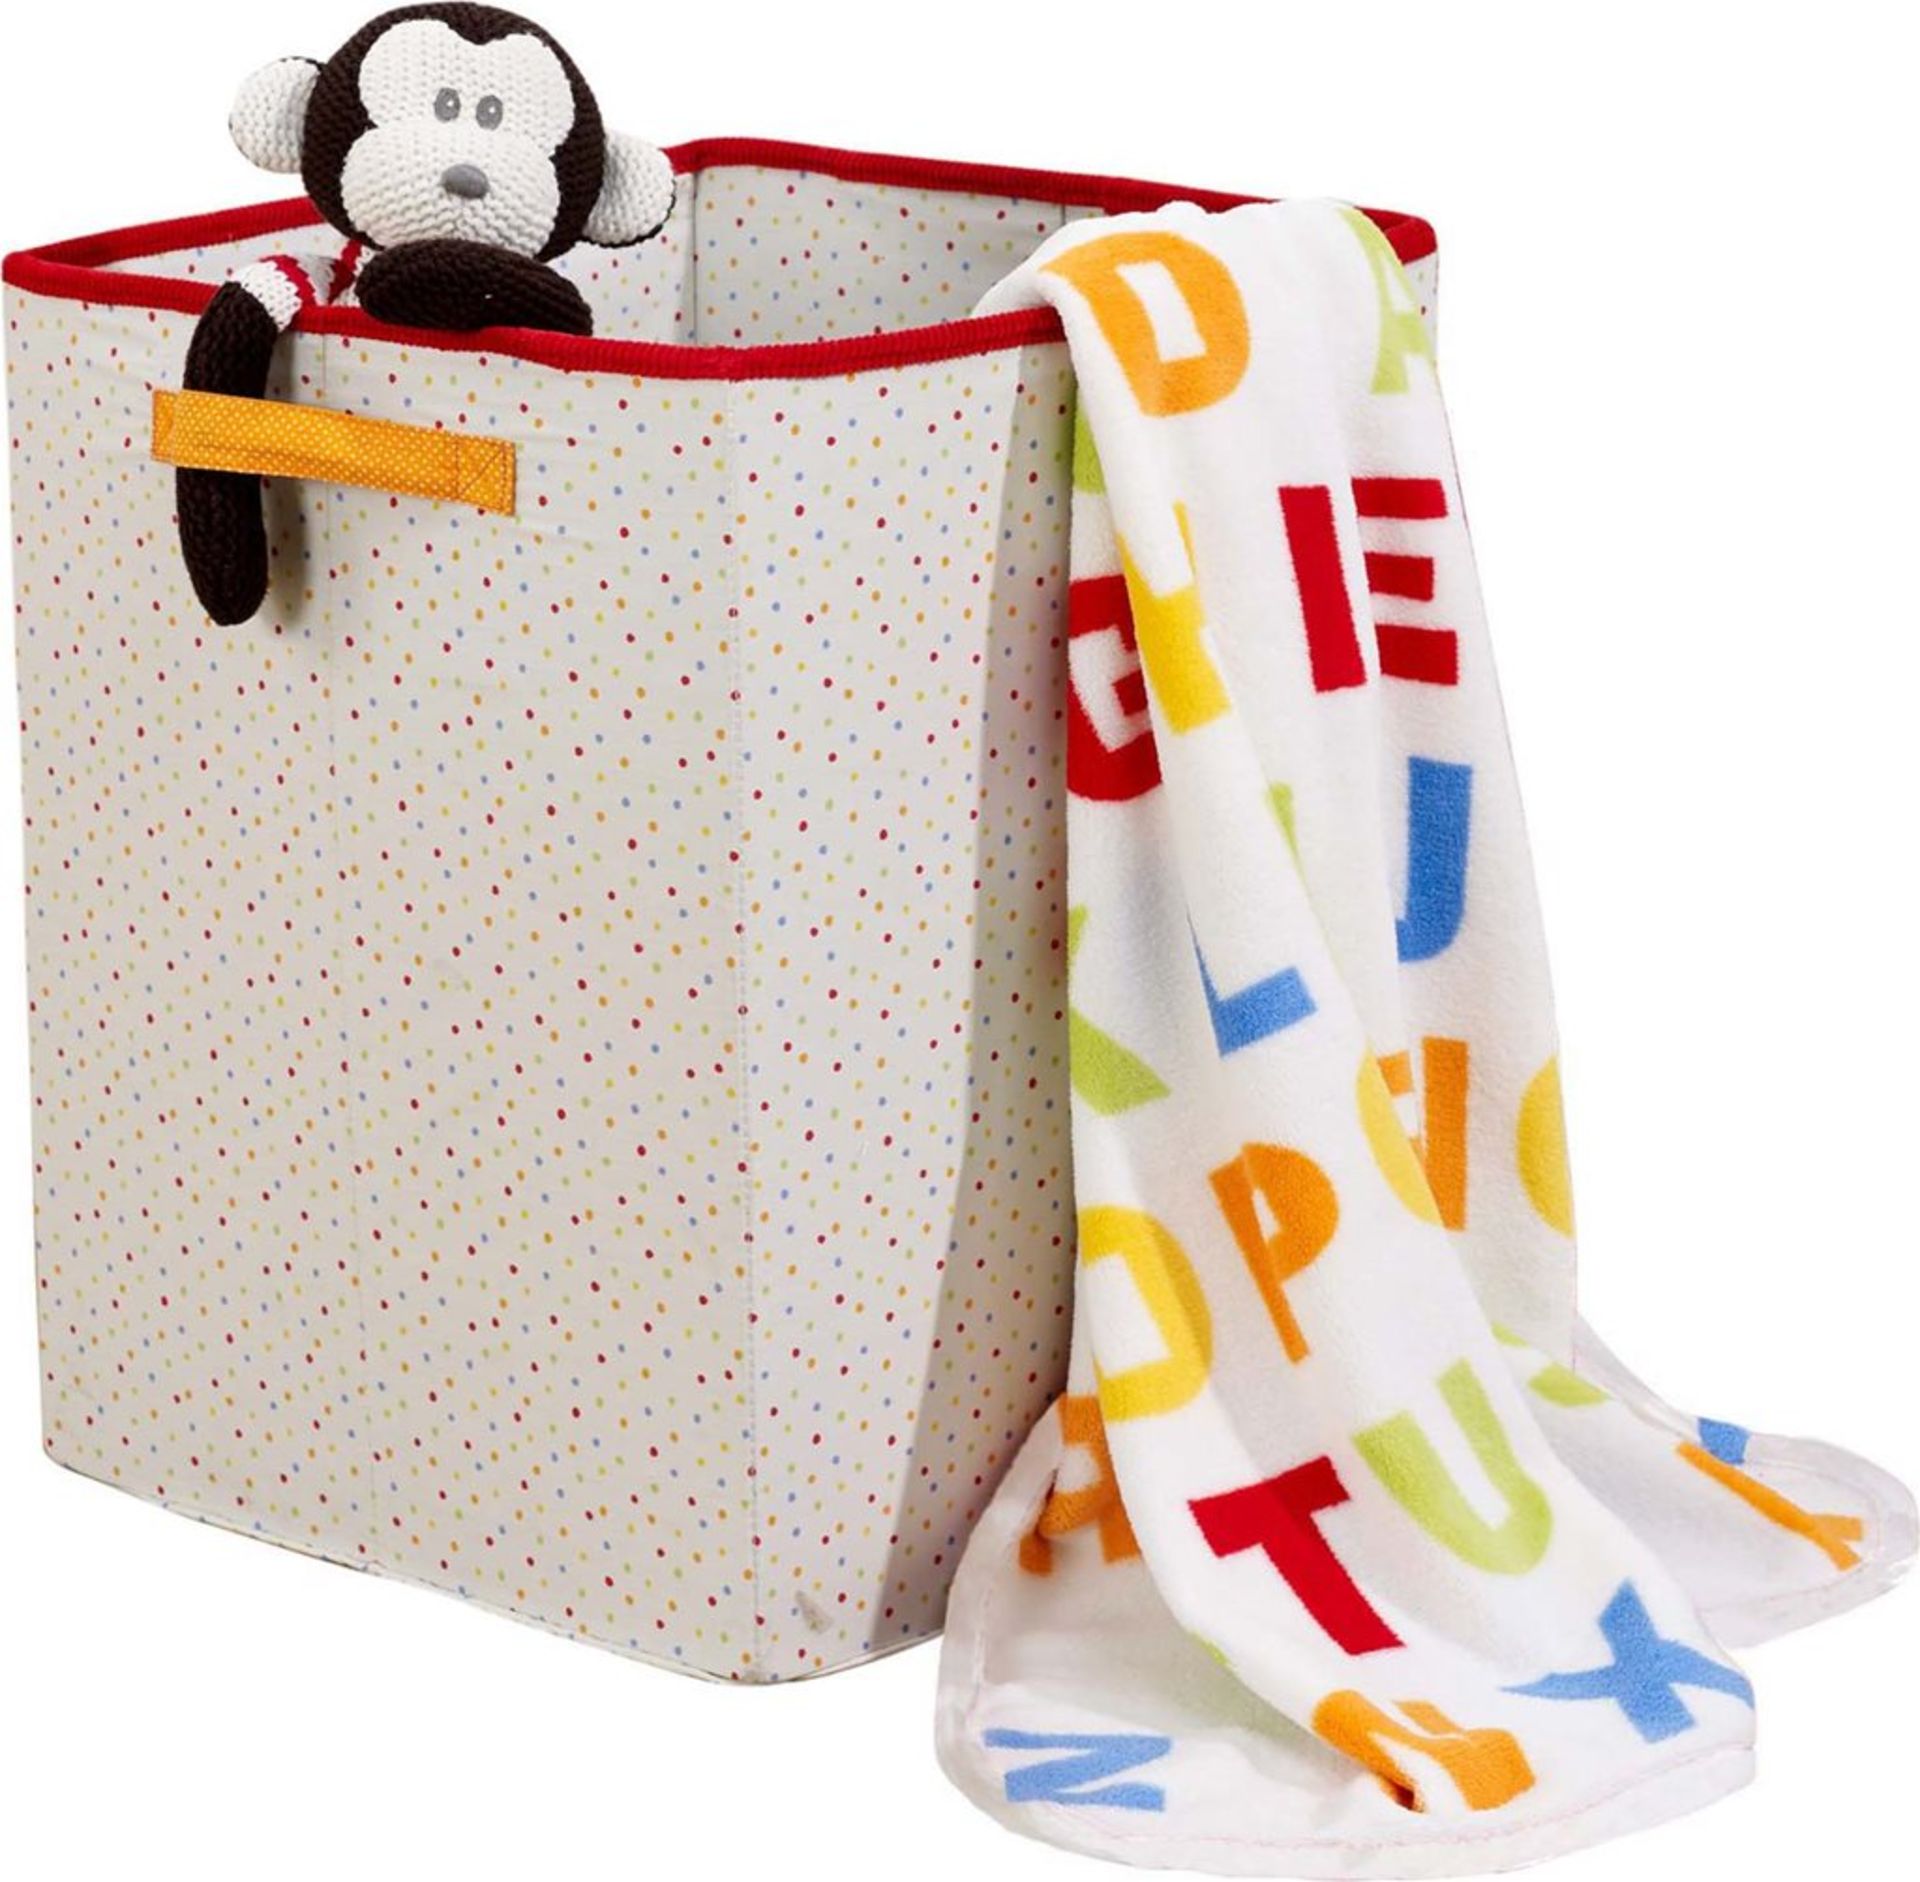 50 sets Jolly Jamboree Nursery Storage Hamper/Toy Box/Laundry Basket - Image 2 of 2